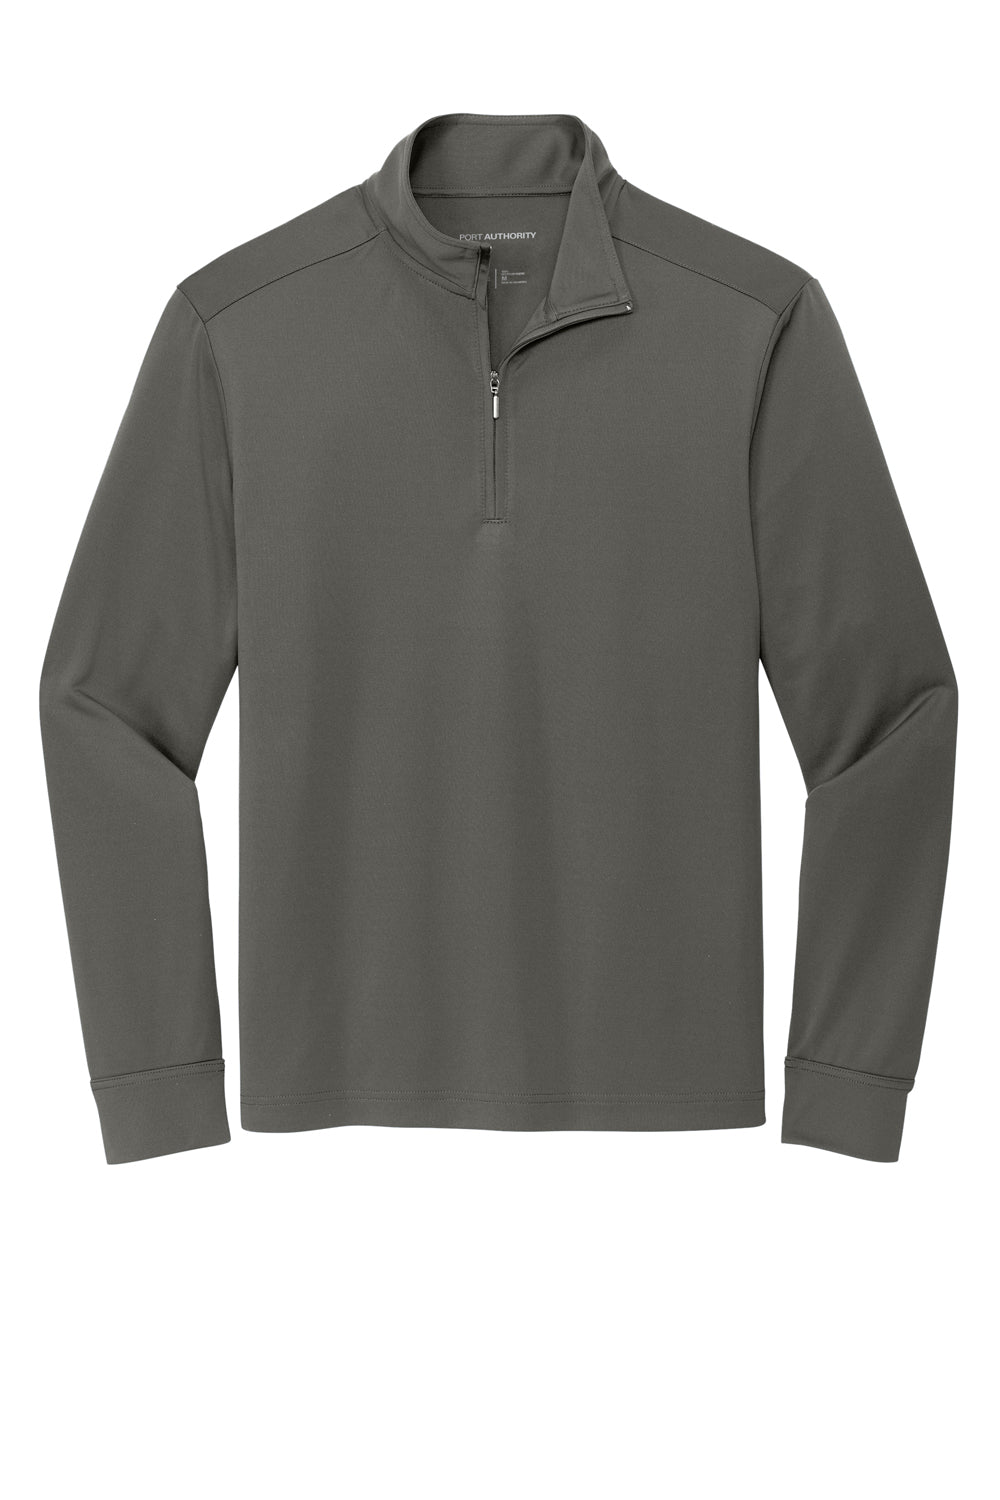 Port Authority K865 C-Free 1/4 Zip Sweatshirt Steel Grey Flat Front